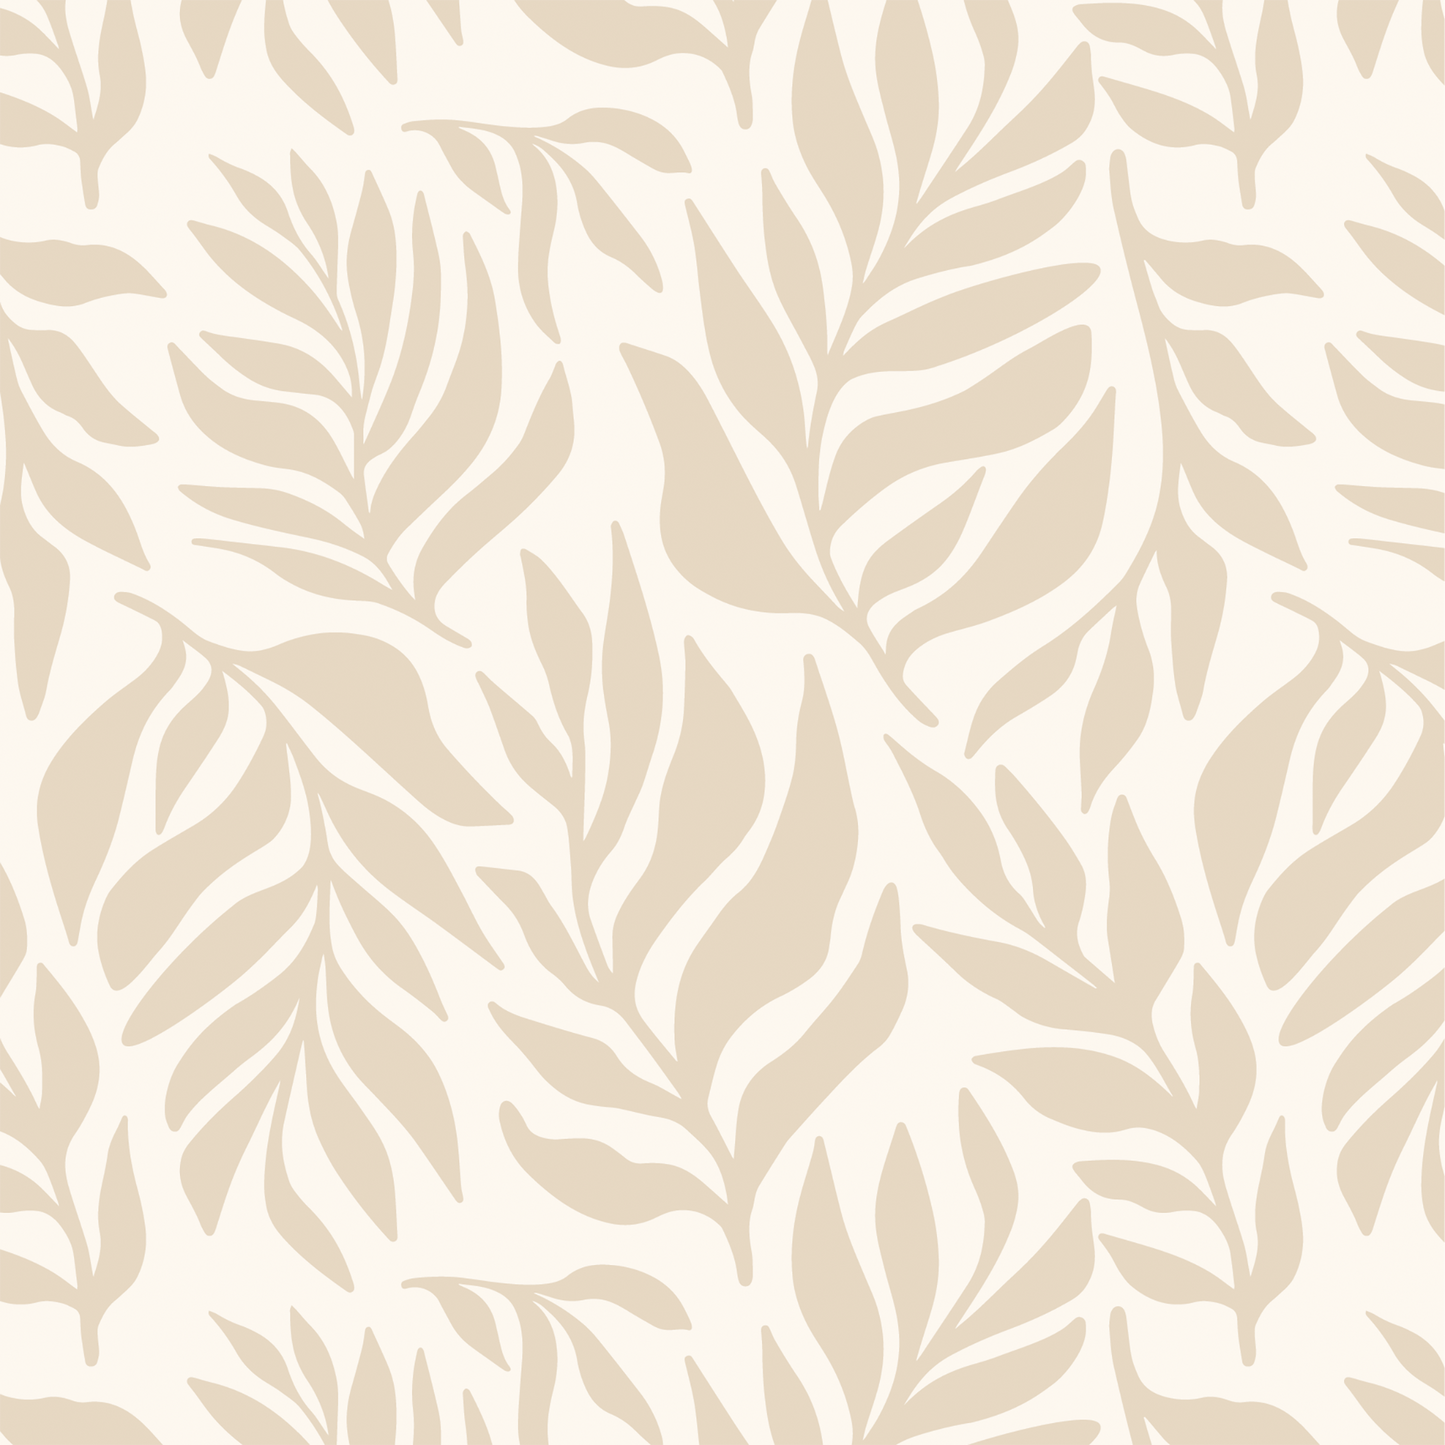 Foliage Wallpaper - Tan